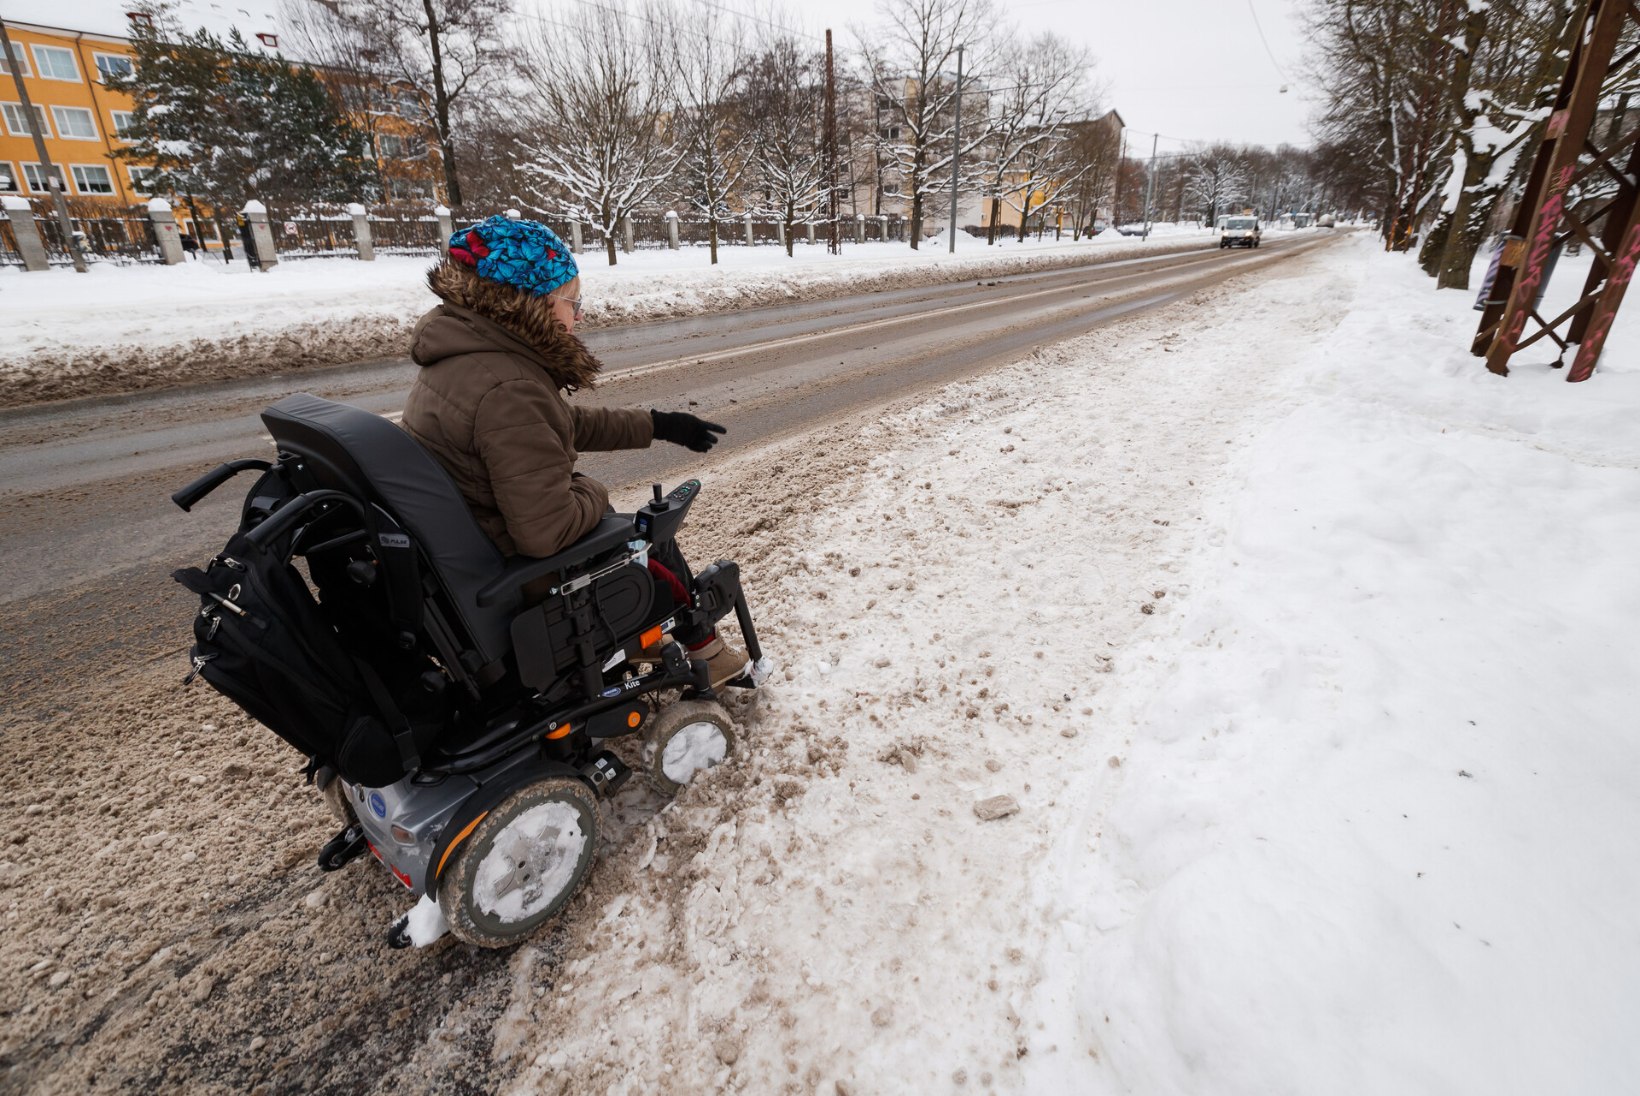 FOTOD ENNE JA PÄRAST: lumevangis olnud munitsipaalmaja ratastoolikasutajad said liikuma, kuid siin-seal peab eelistama sõiduteed